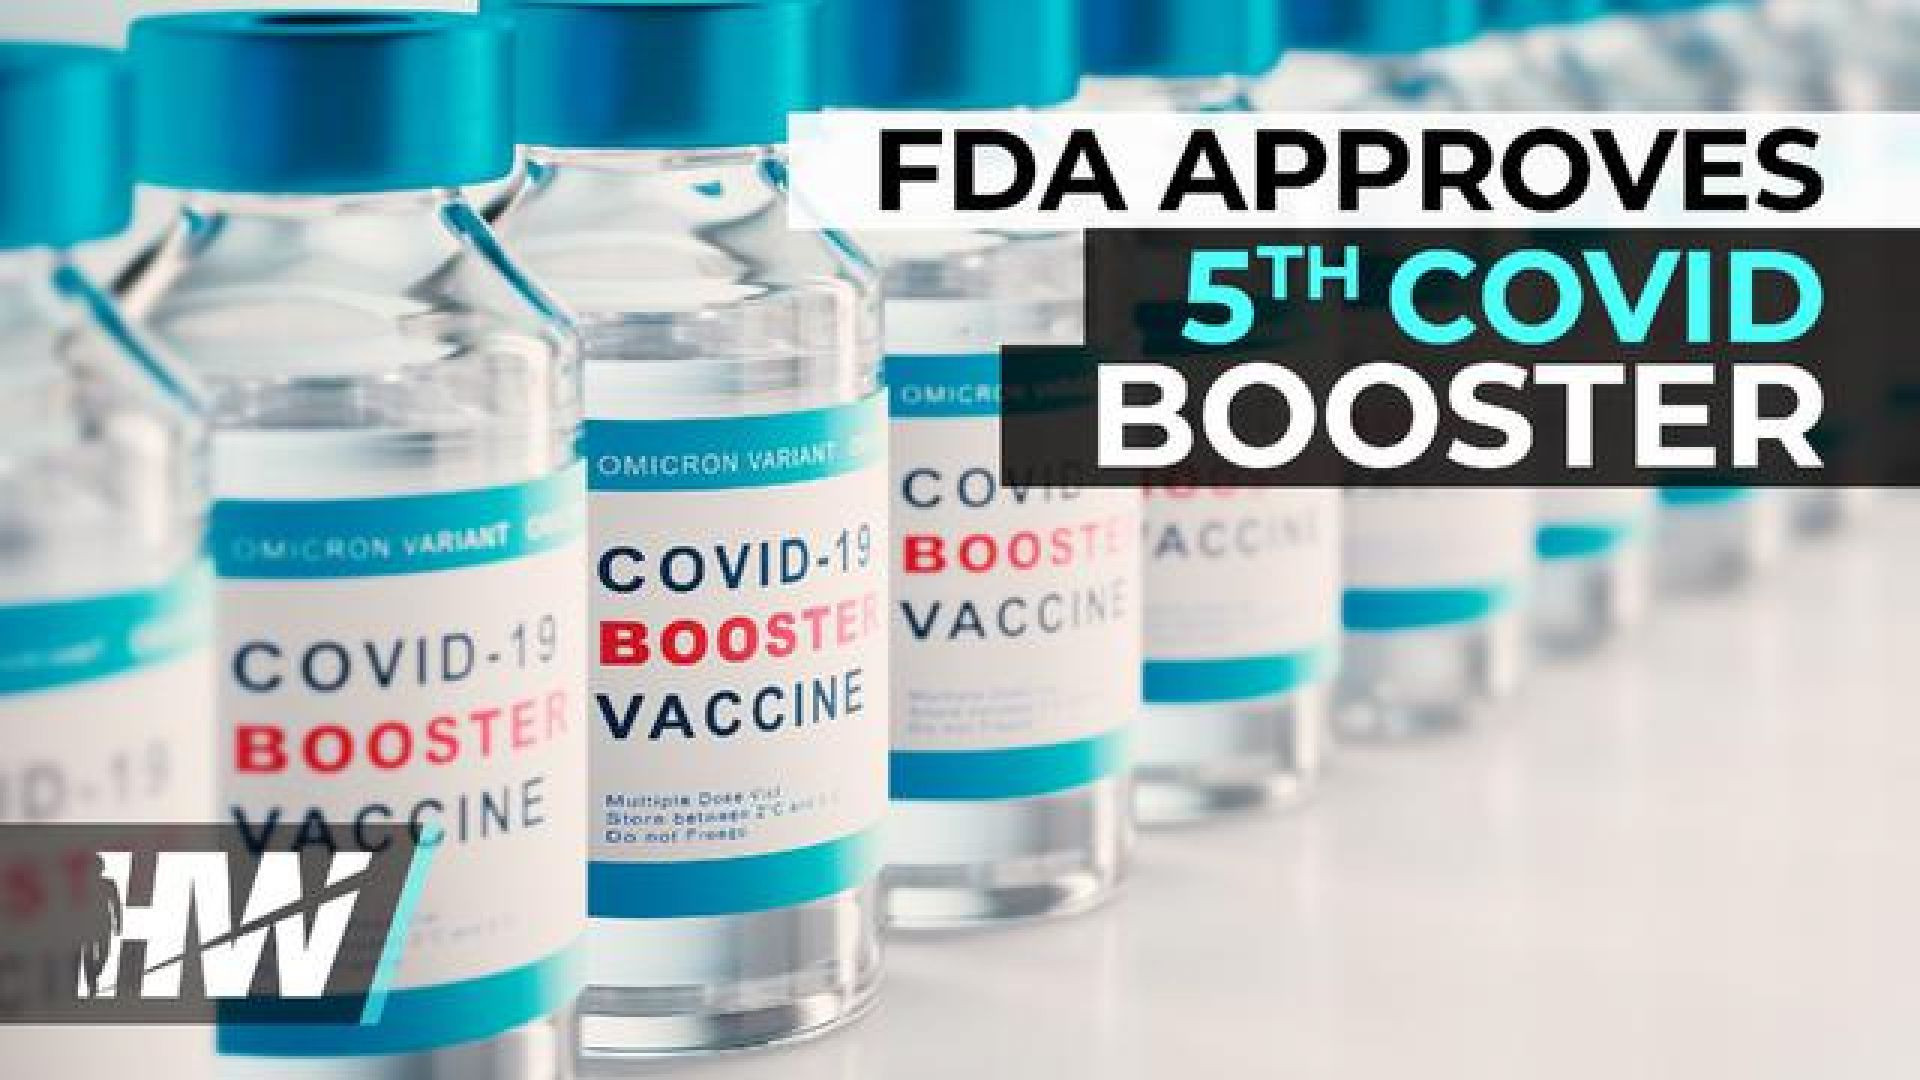 FDA APPROVES 5TH COVID BOOSTER